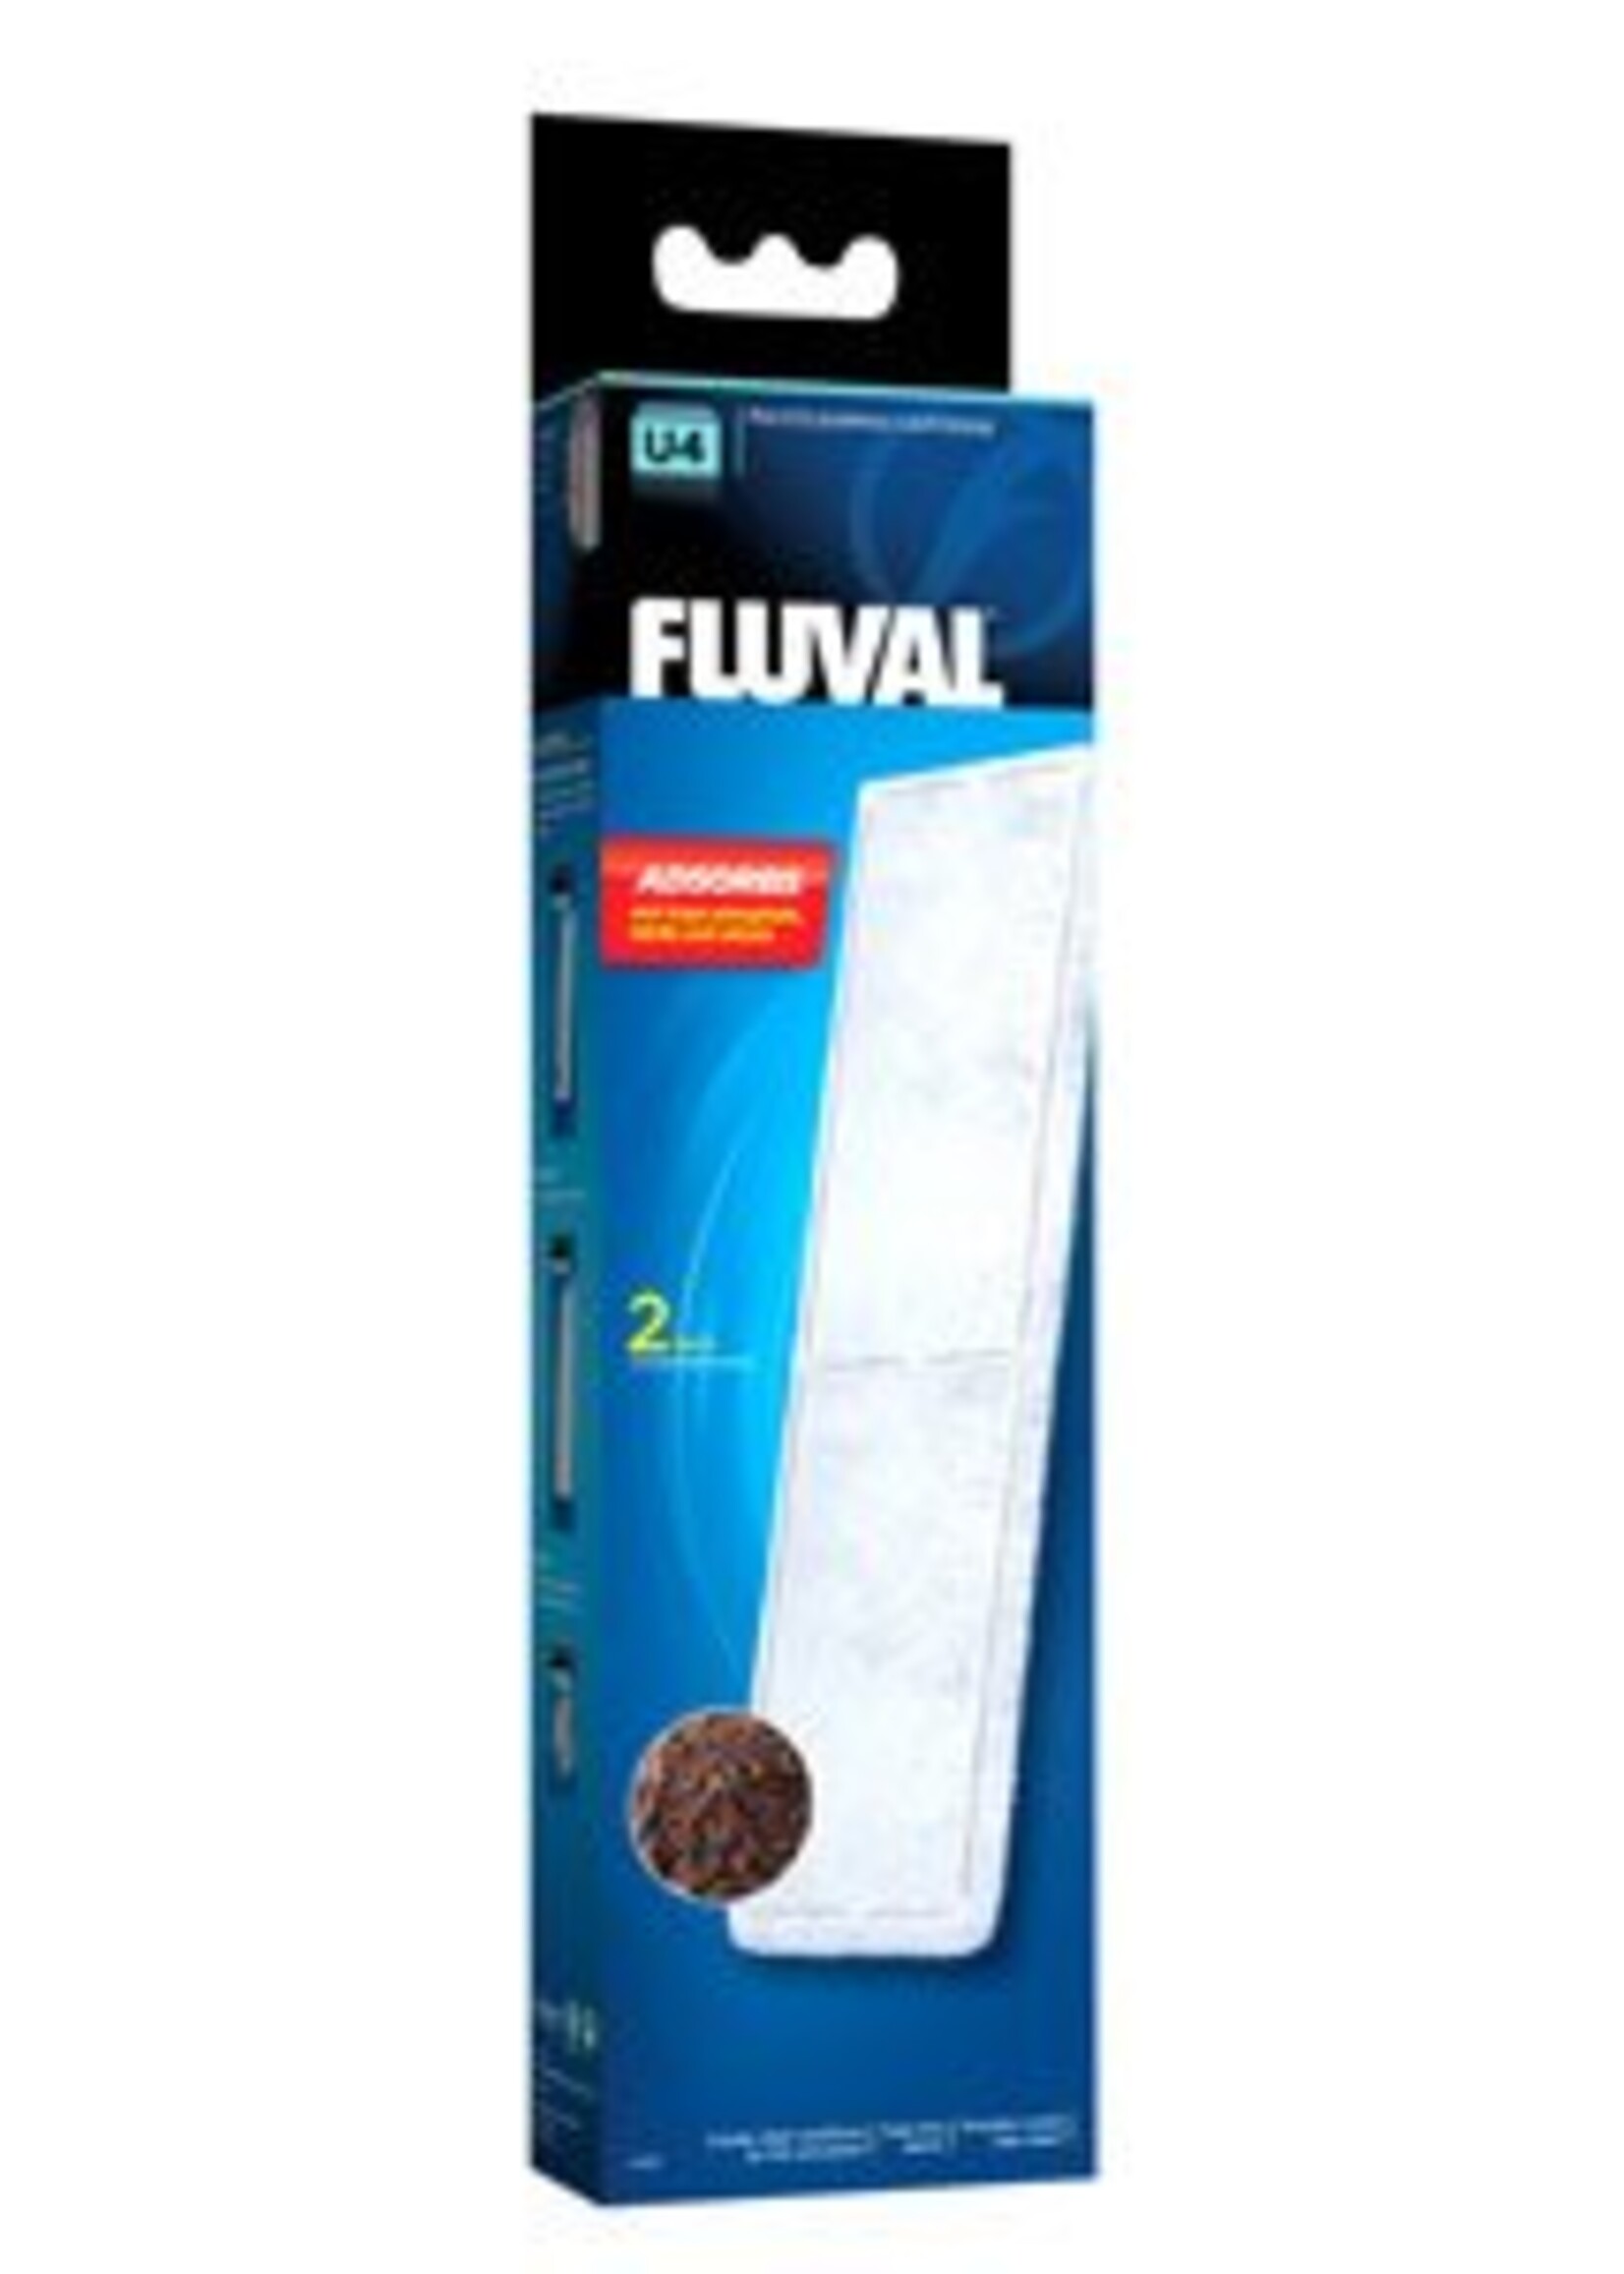 Fluval Fluval U4 Clearmax Cartridge, 2pcs/Pck